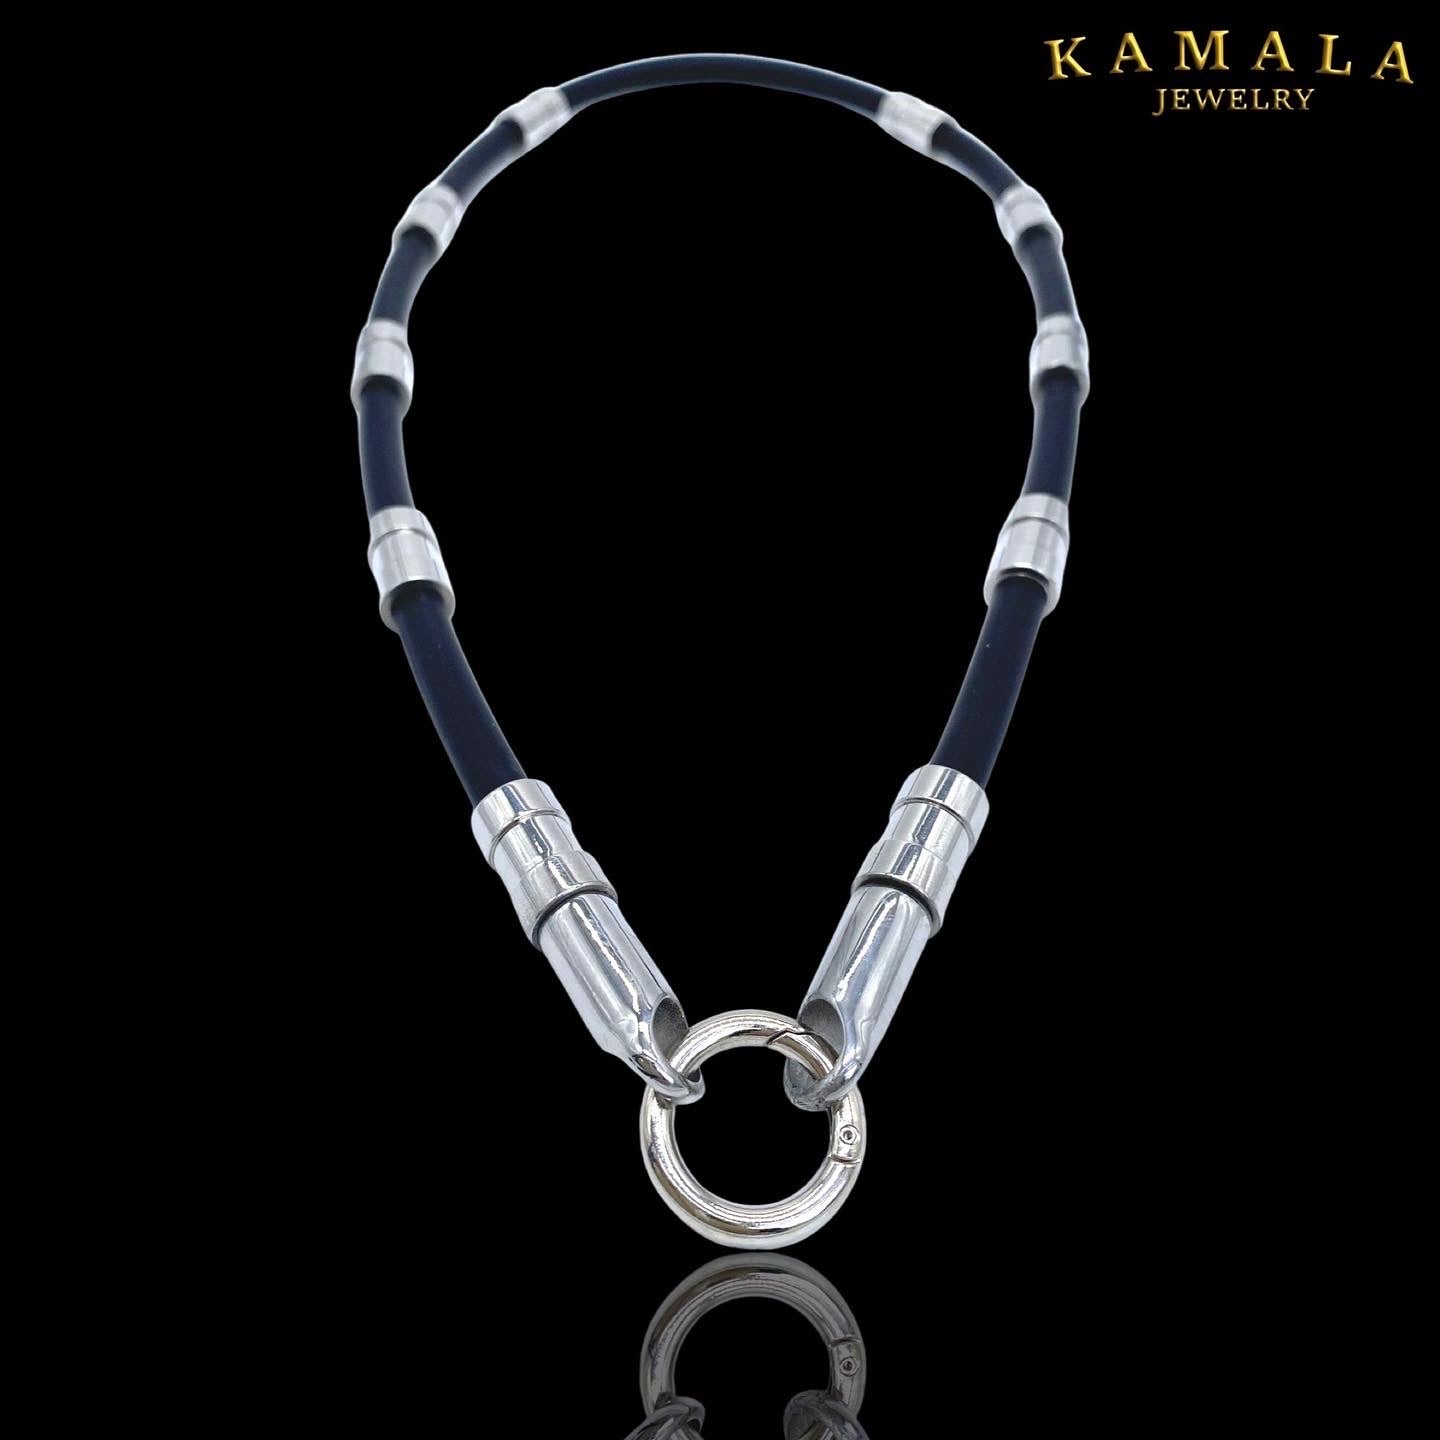 Halskette aus Gummi Kautschuk mit Edelstahl - Gambino Silber